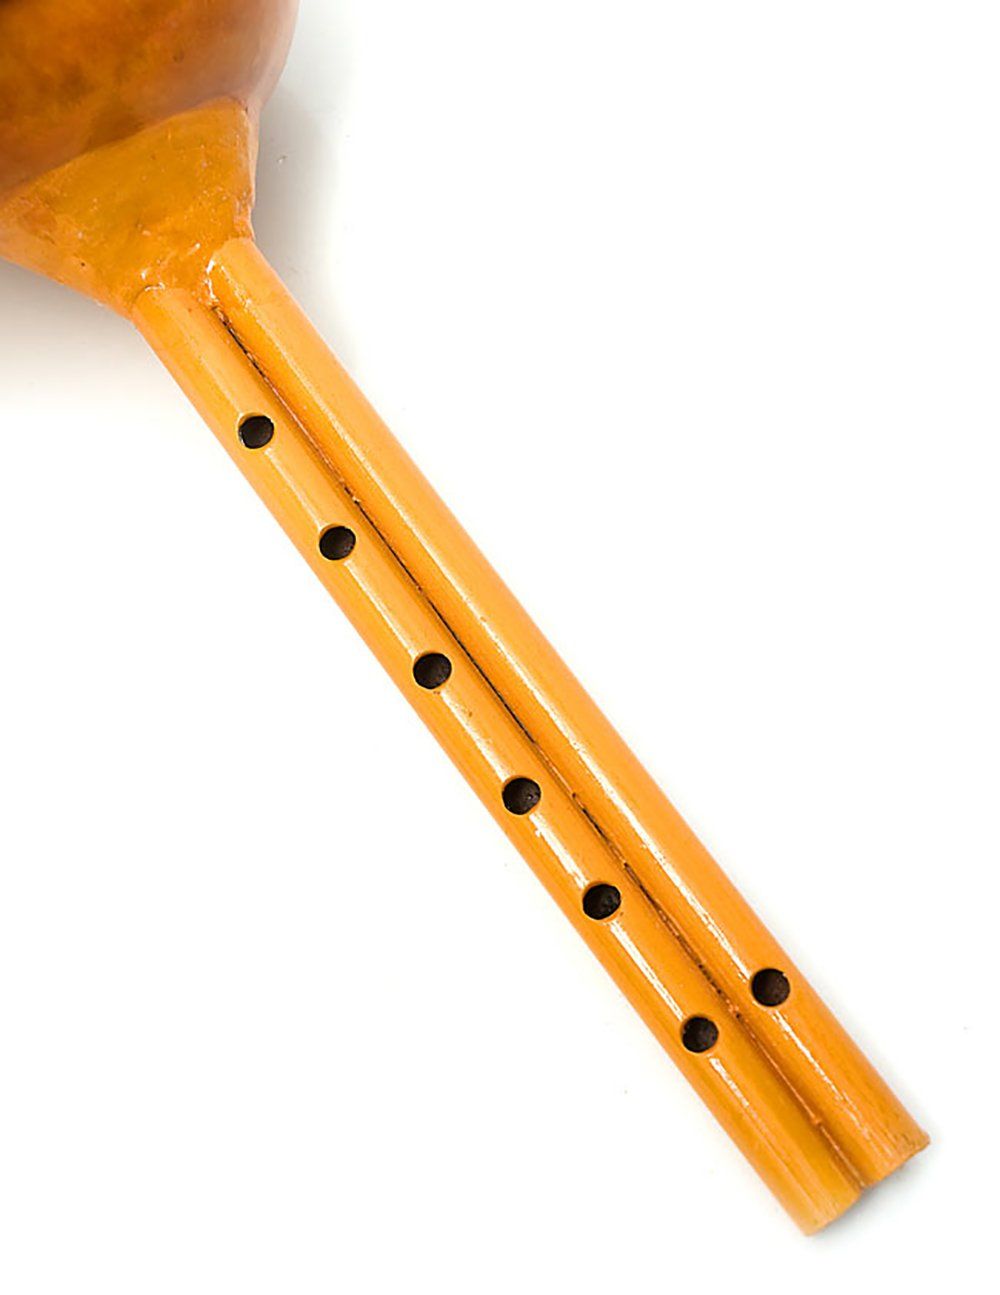 プーンギー[蛇使いの笛] / プーンギー インド 楽器 管楽器 民族楽器 蛇使い - メルカリ